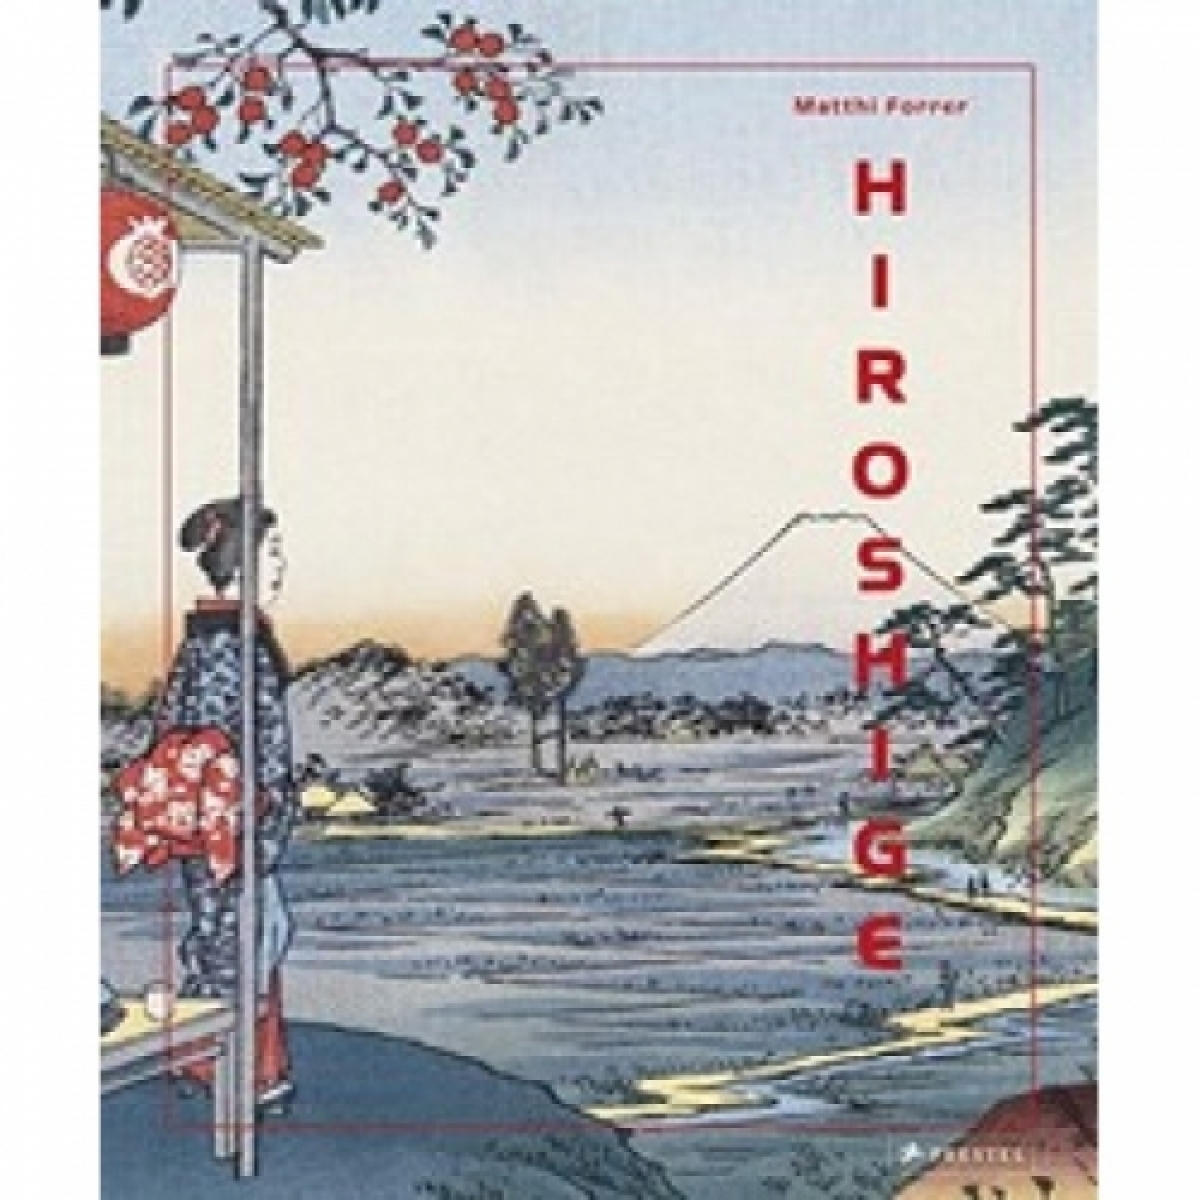 Hiroshige 